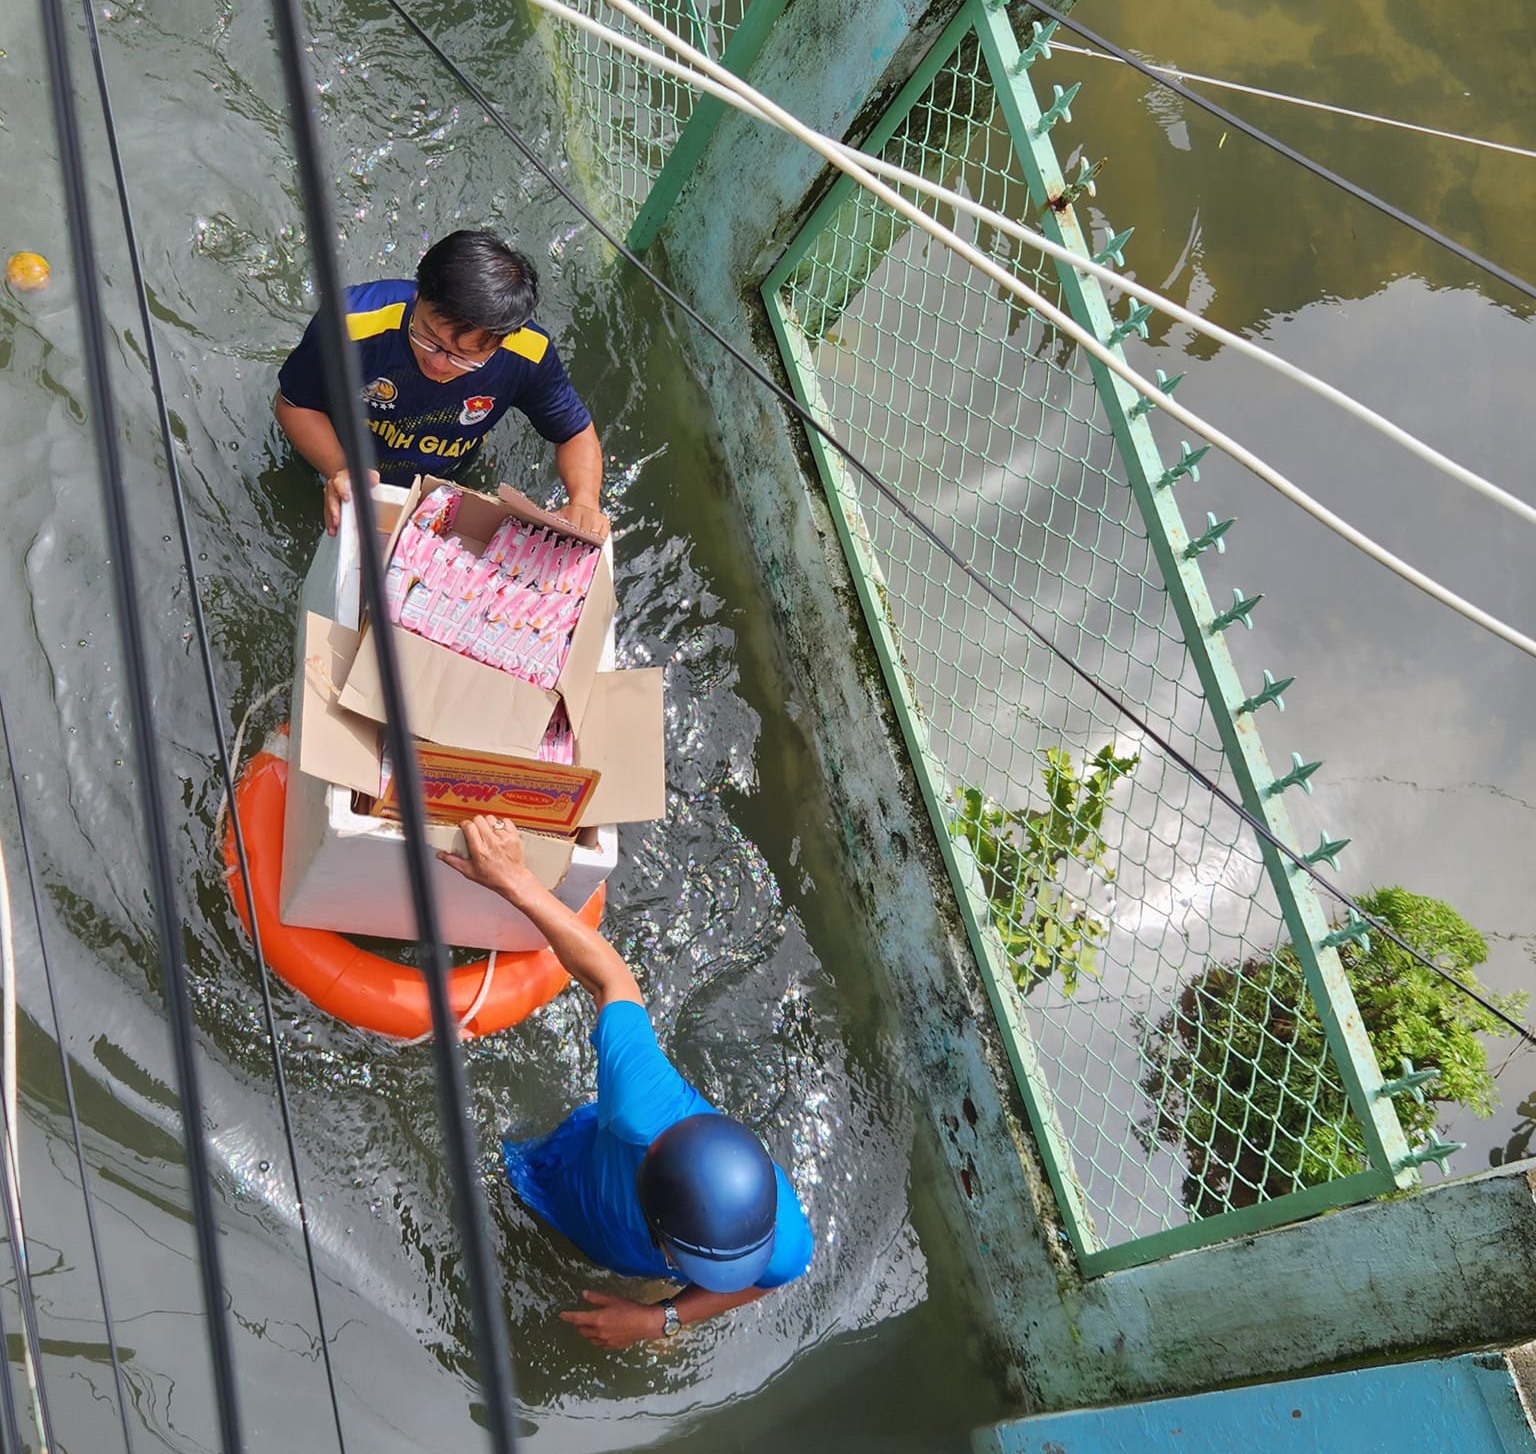 Chính quyền địa phương phát mì gói hỗ trợ dân vùng ngập lụt ở trung tâm thành phố Đà Nẵng ngày 15.10. Ảnh: Nguyên Đức